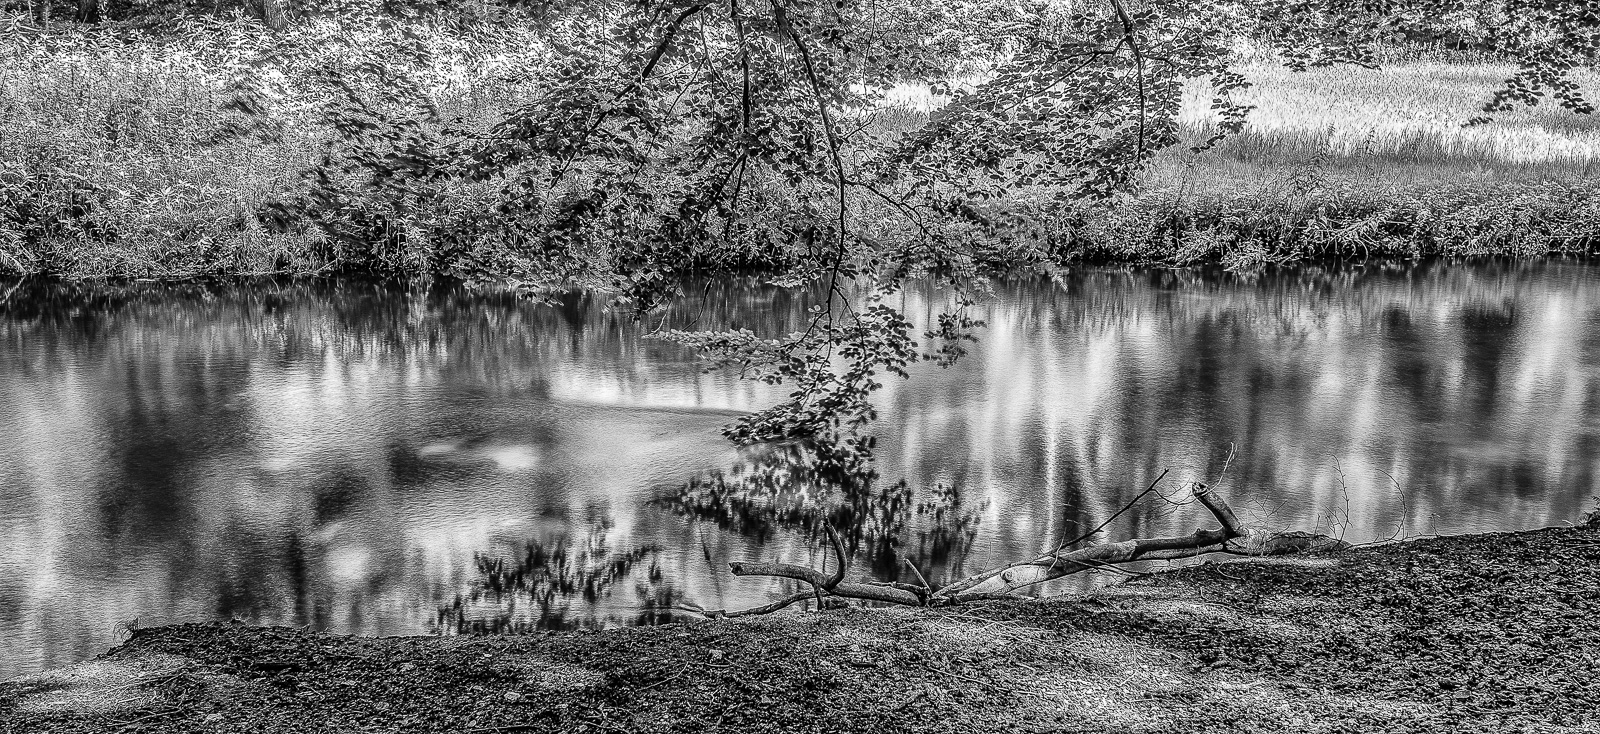 Breitbild-Foto eines BachLaufs zwischen einer sonnigen Wiese (hinten) und einem Wald. BuchenÄste hängen ins Wasser, die Bewegung zeichnet weiche Spuren auf die WasserOberFläche. SchwarzWeißBild.